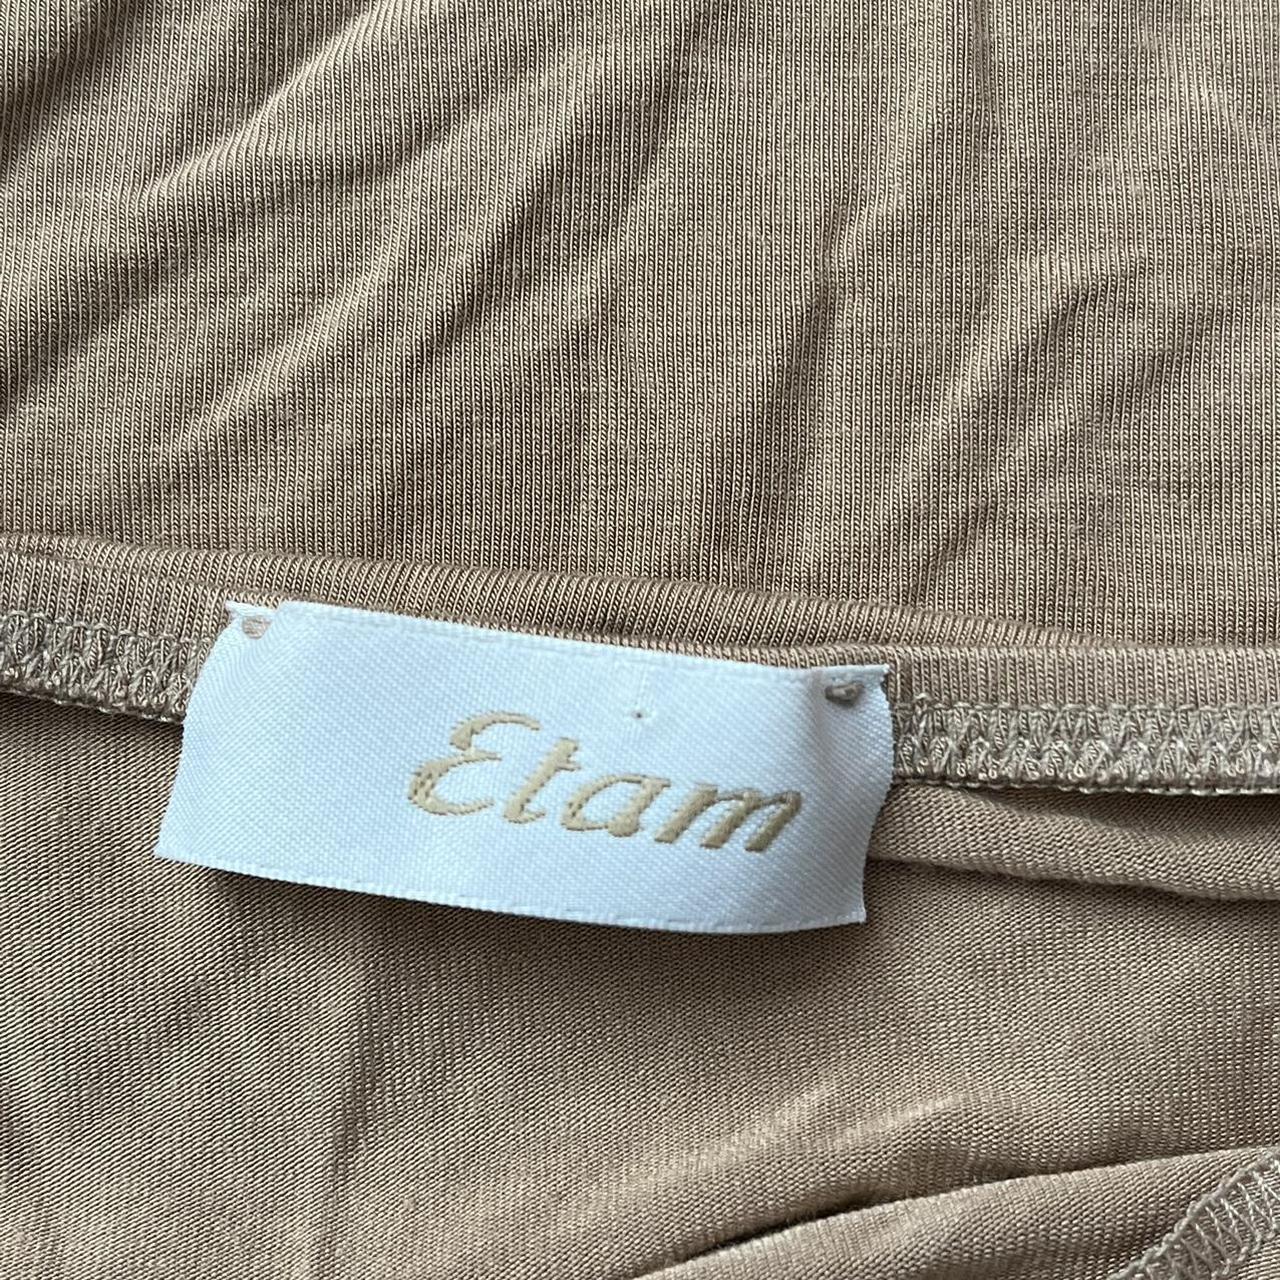 Etam Women's Tan and Cream Vest (2)